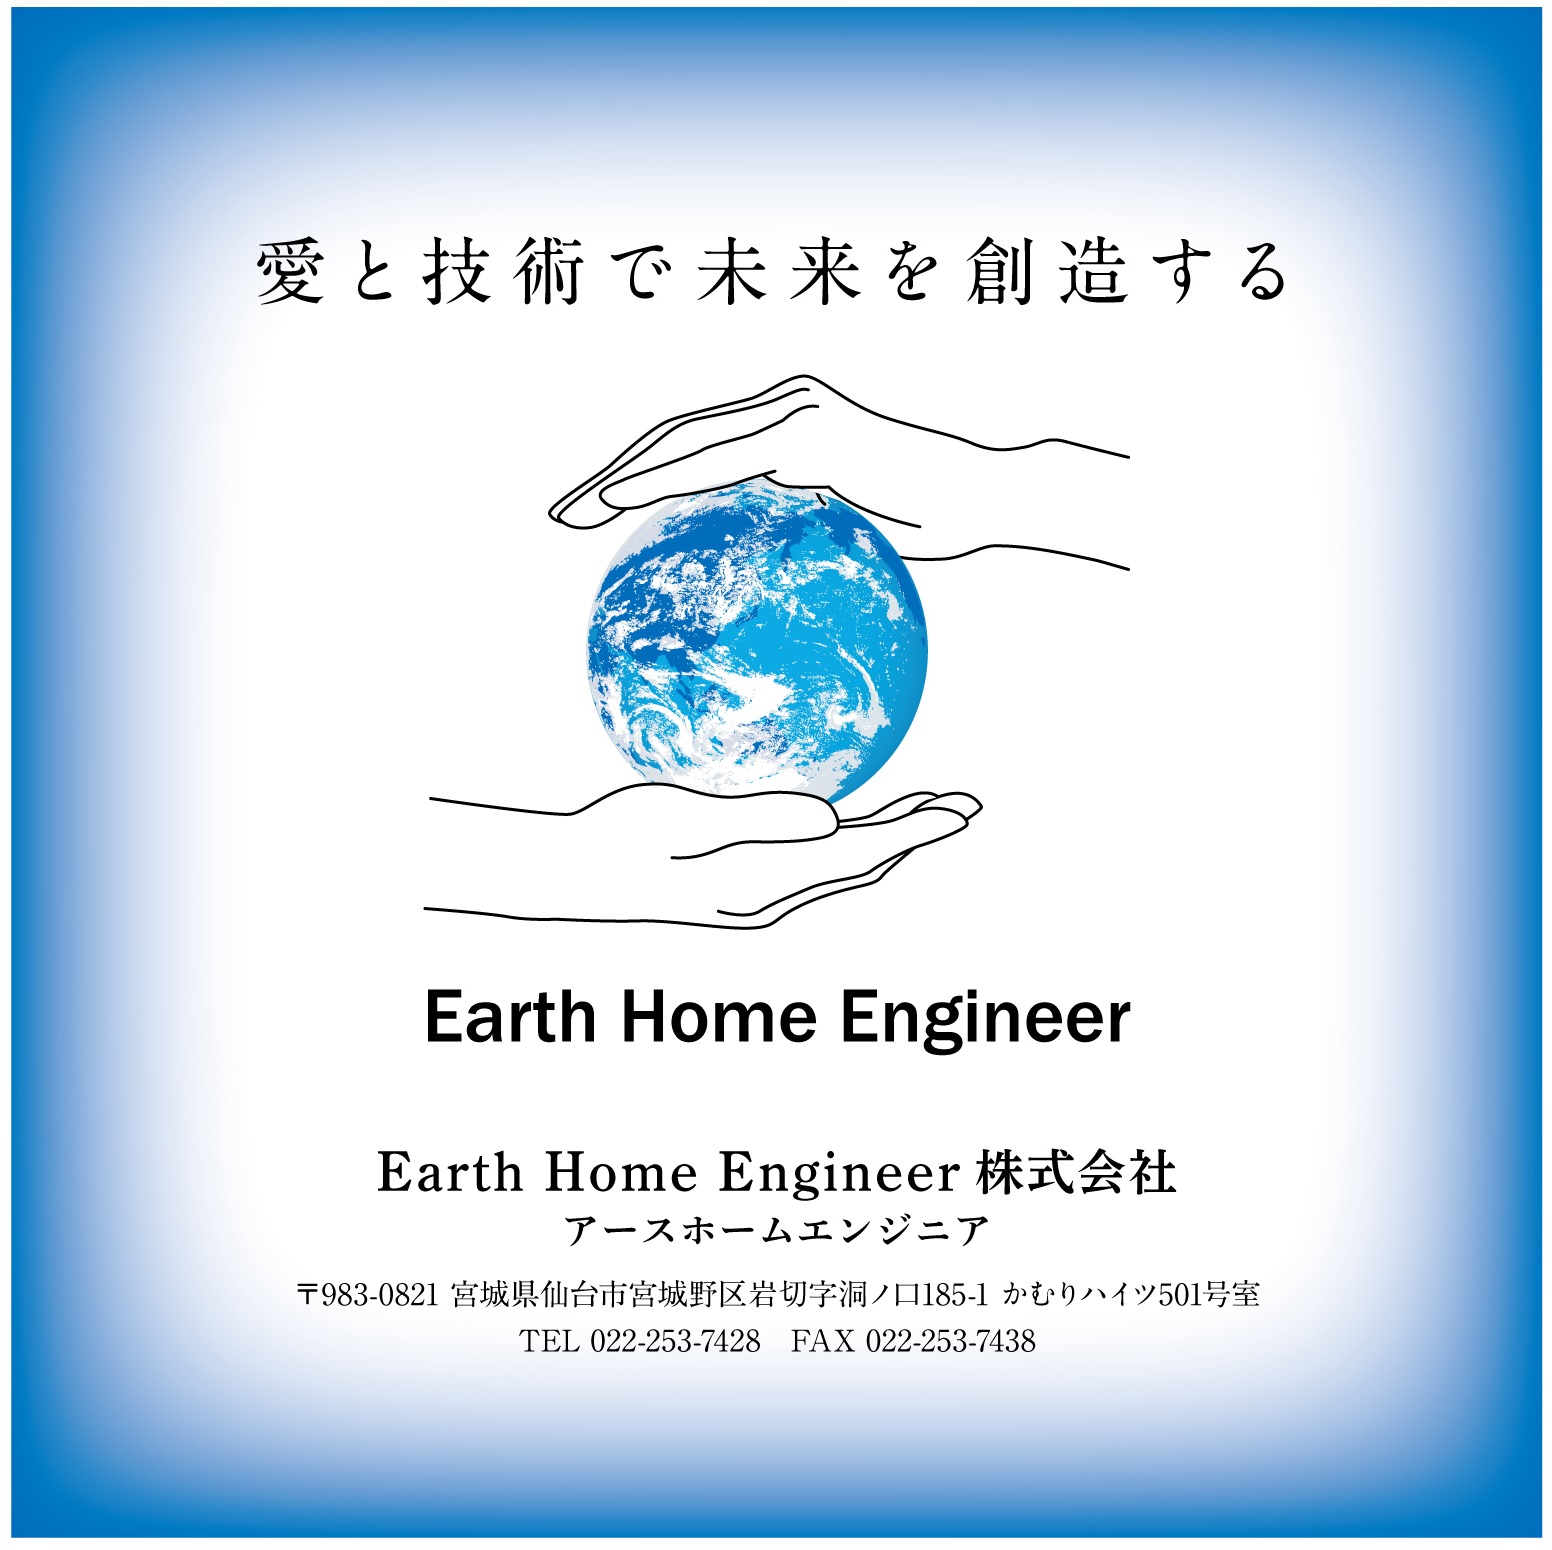 Earth Home Engineer株式会社